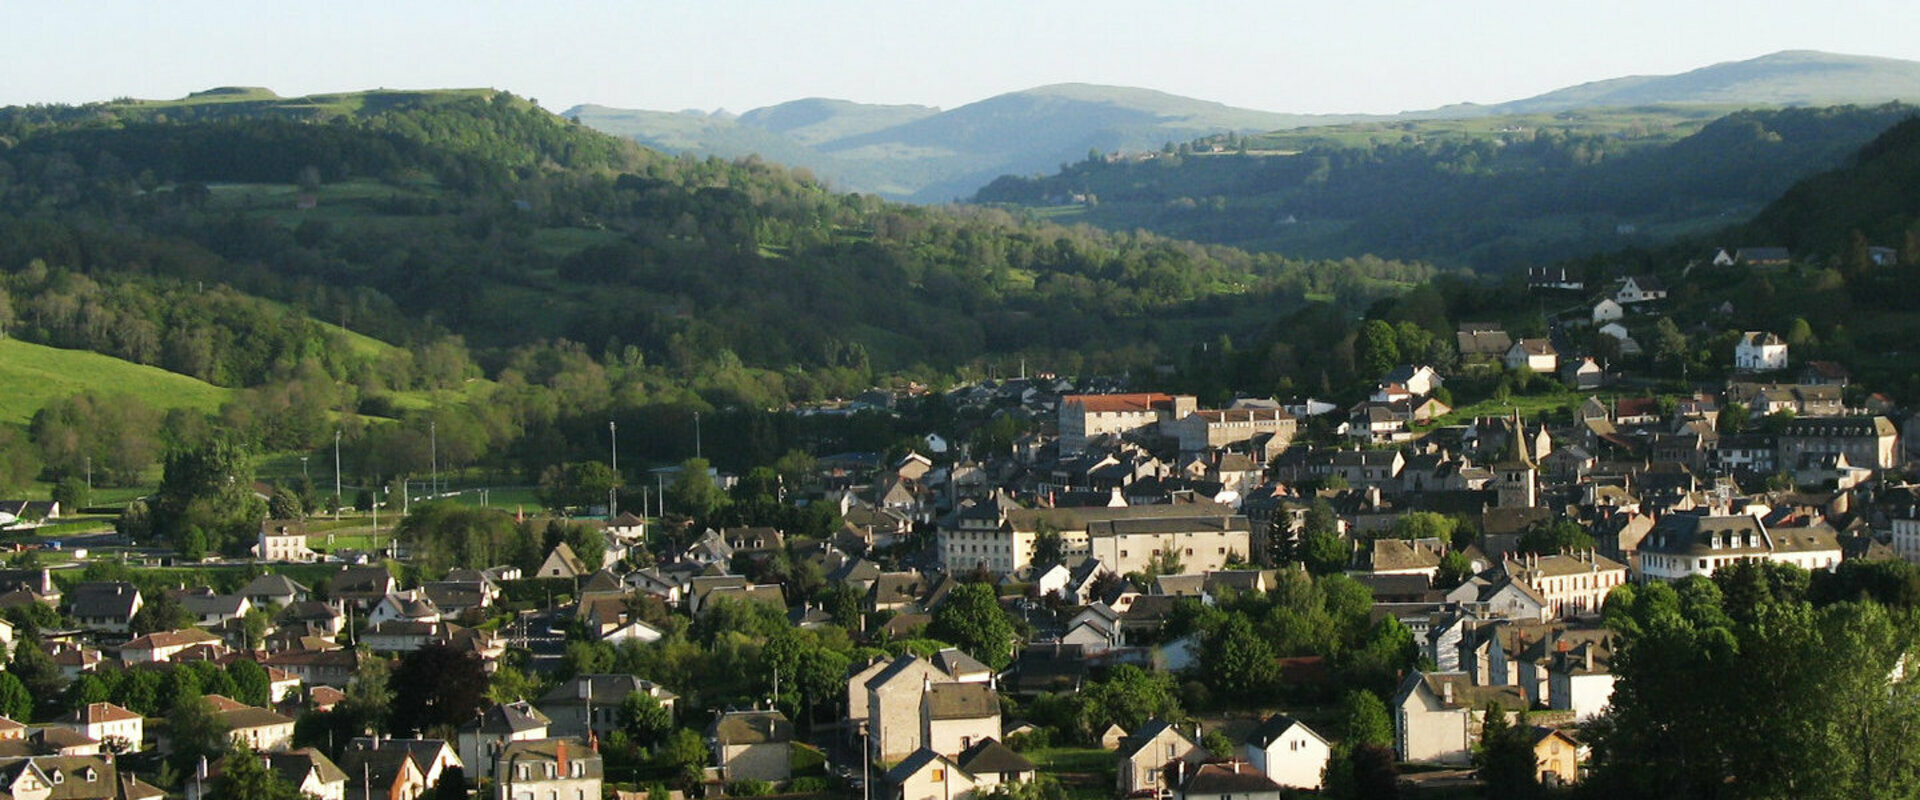 Riom-es-Montagnes-Cantal